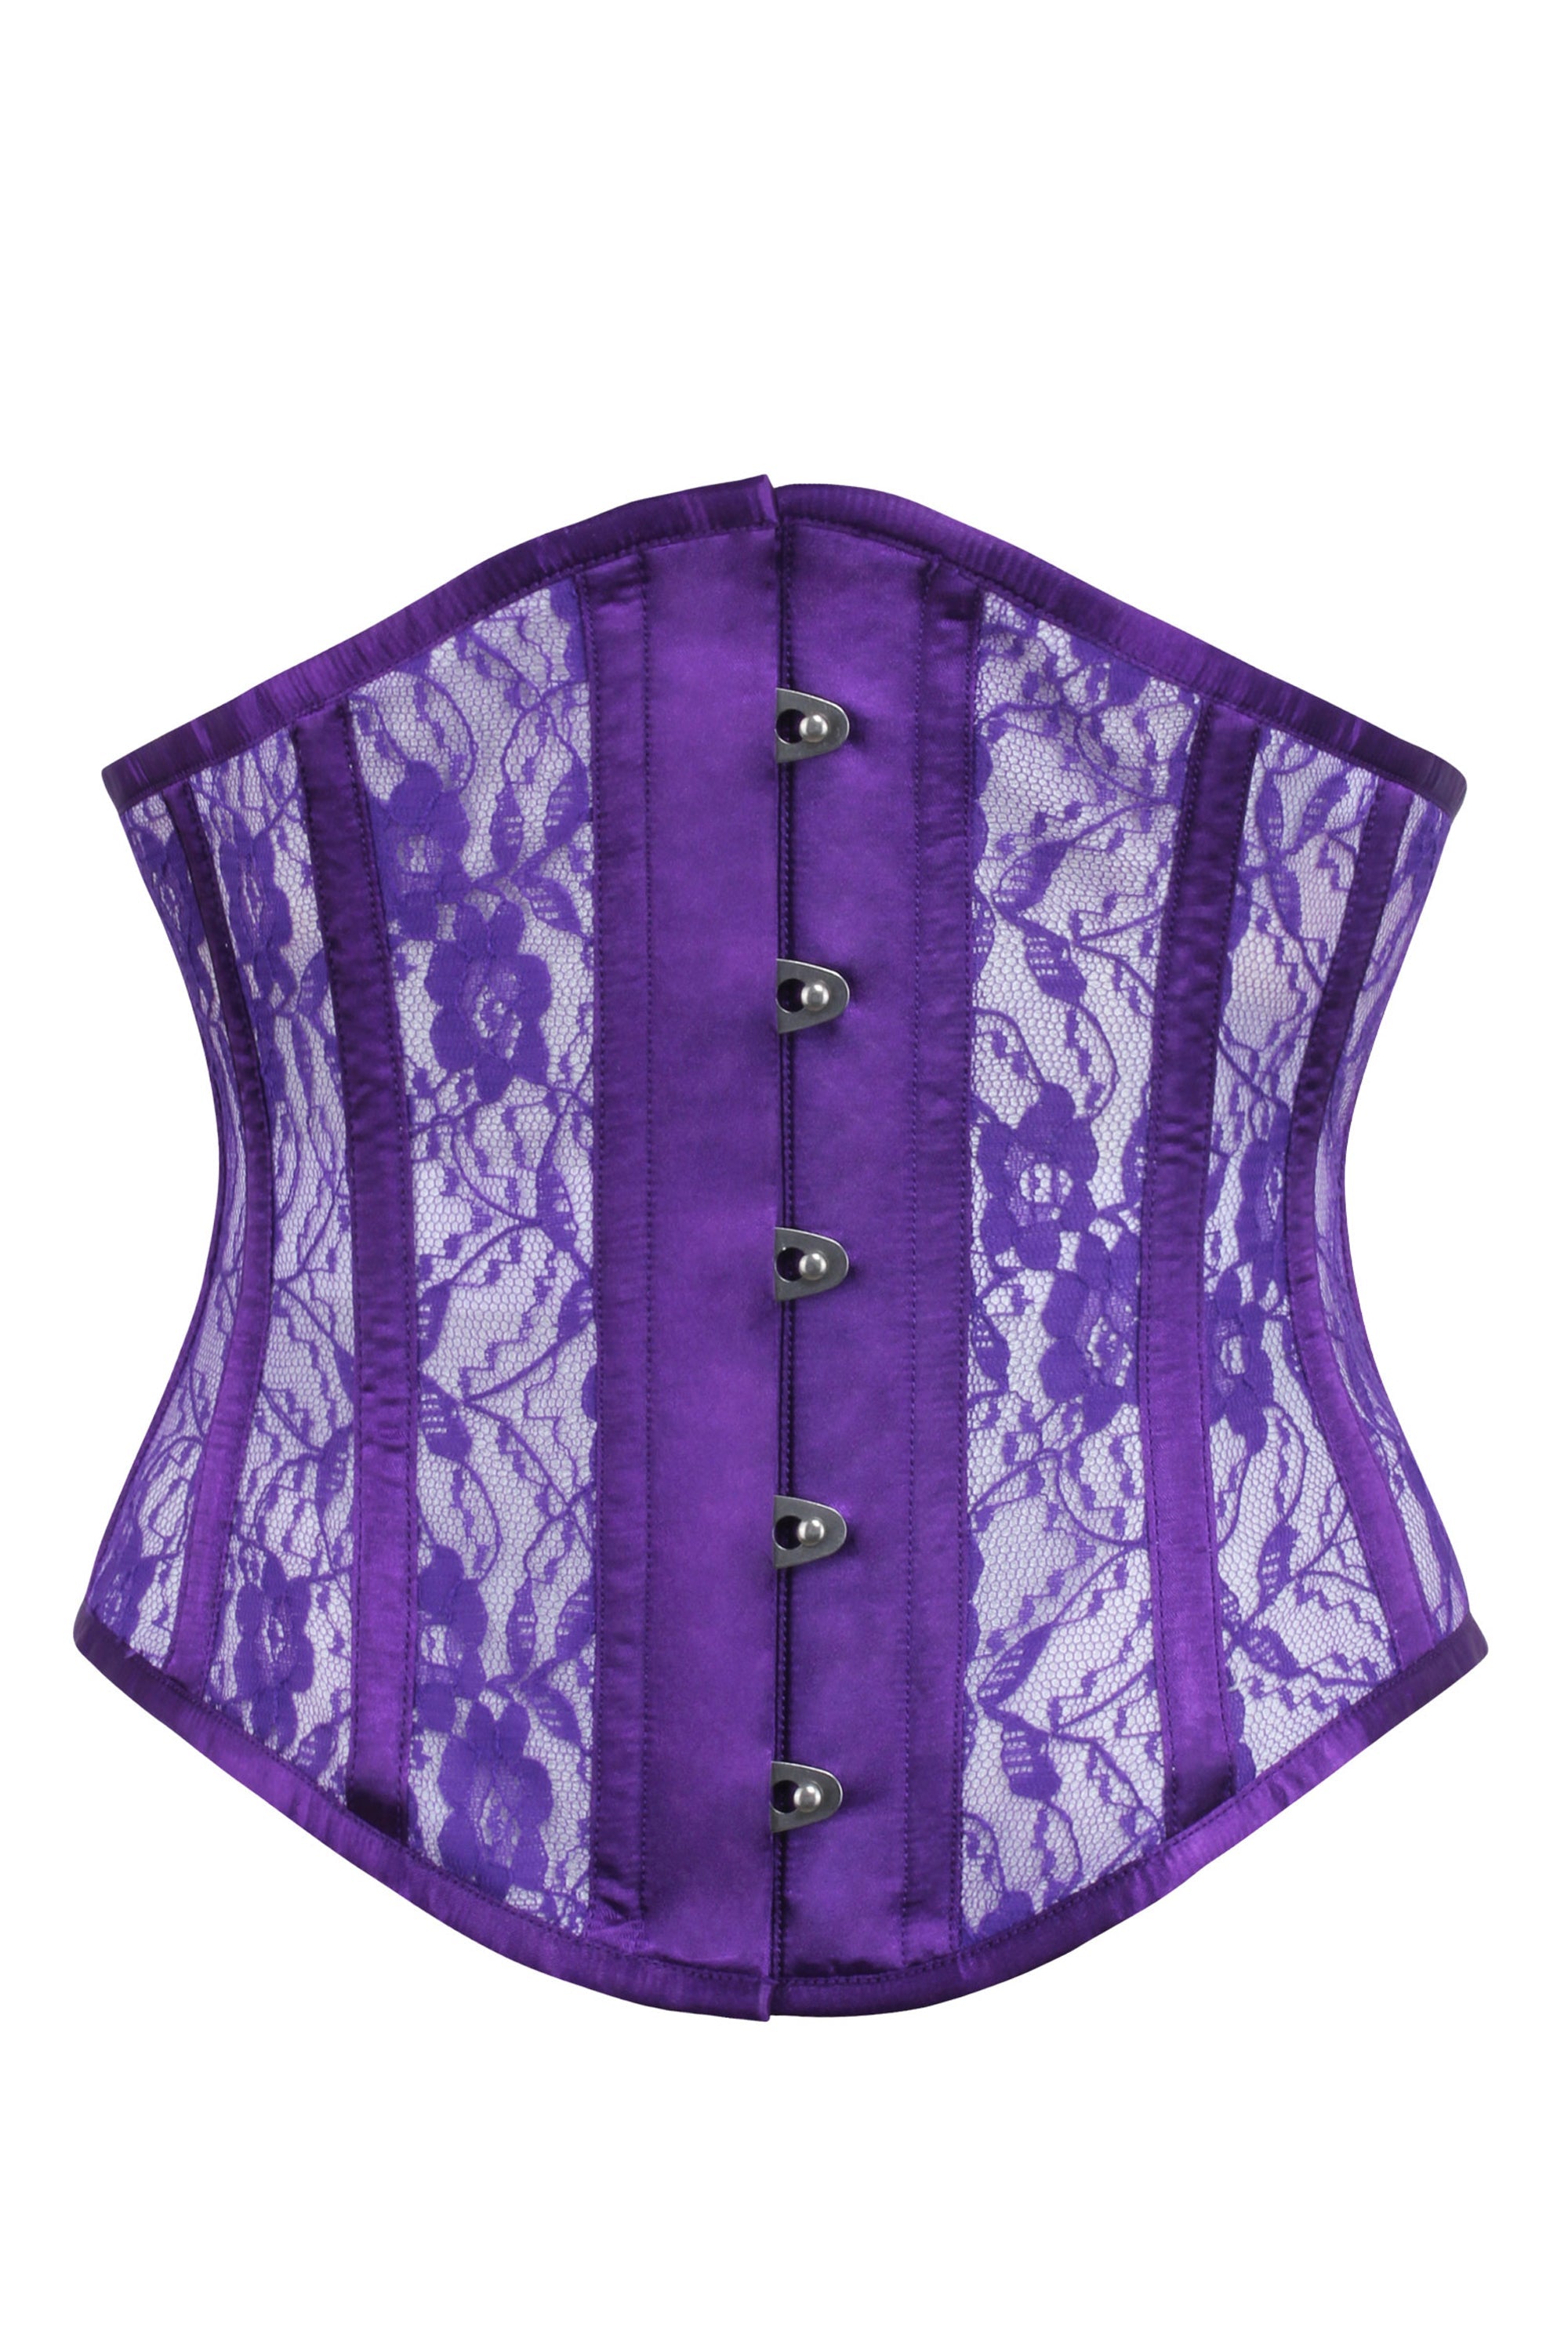 Couture Purple Corset and Bra, Underbust Corset, Burlesque Lace Lingerie,  Lace Corset, Hourglass Waist Trainer 